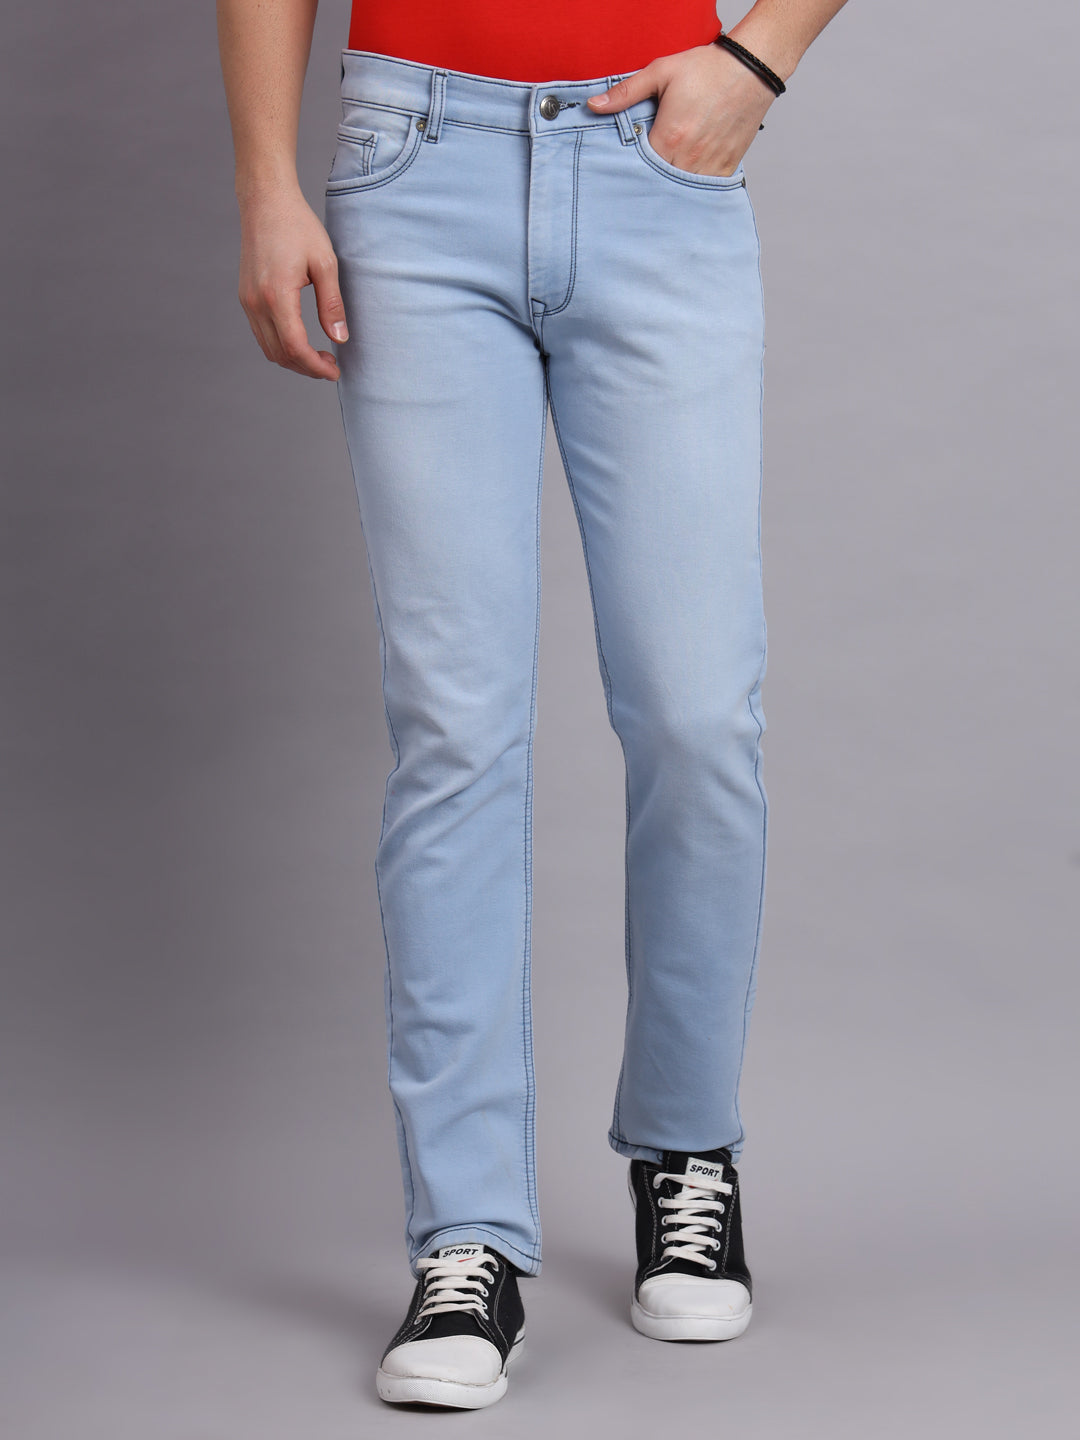 Amswan Light Carbon Blue Jeans for Men